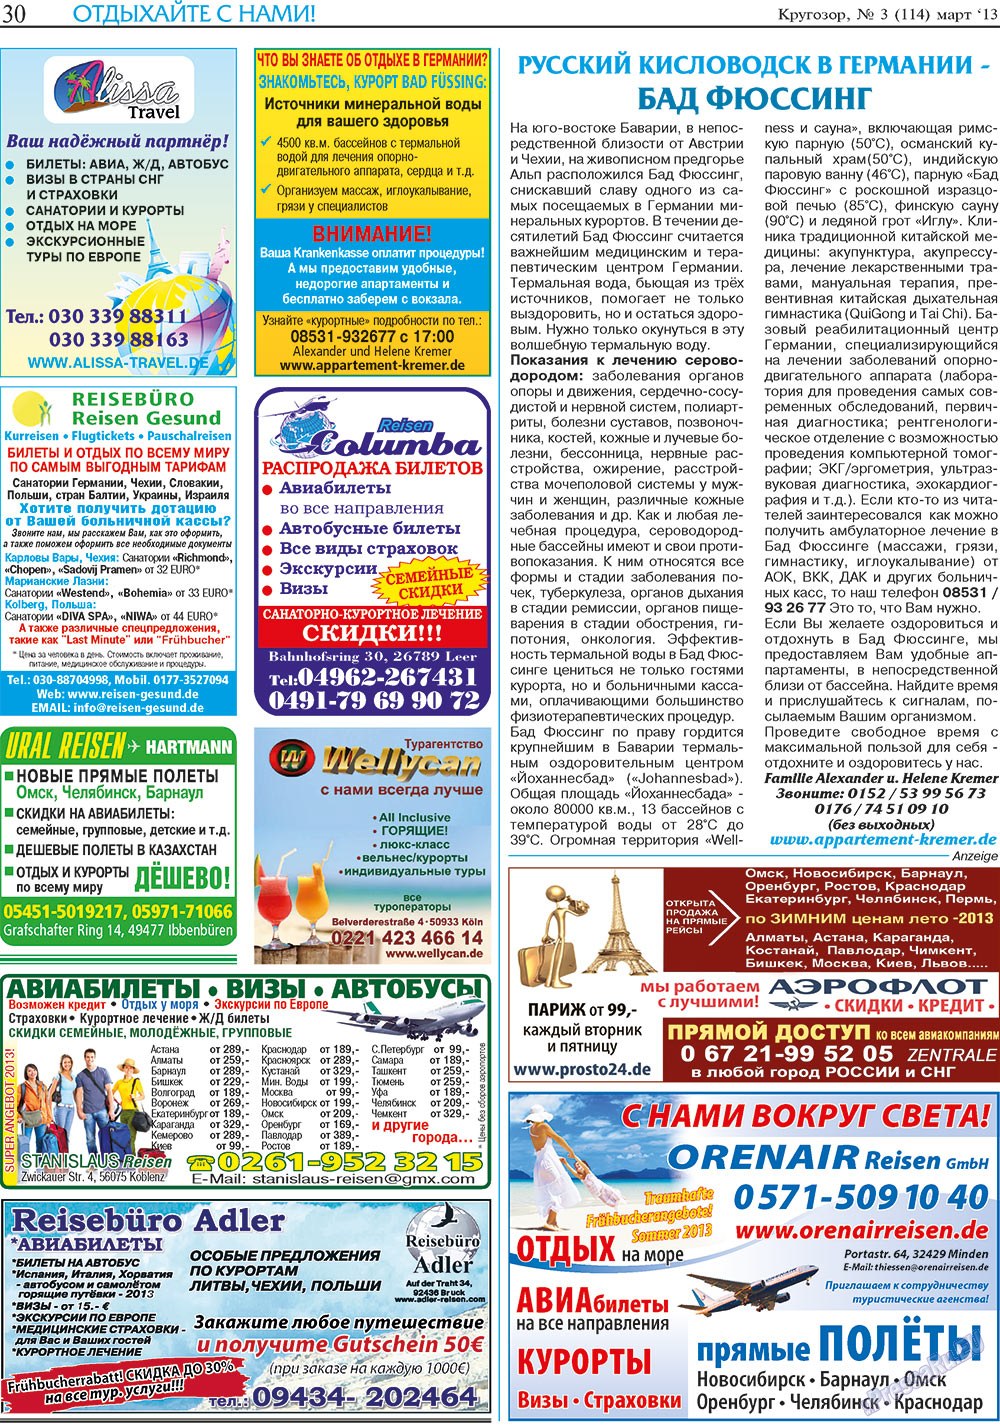 Кругозор, газета. 2013 №3 стр.30